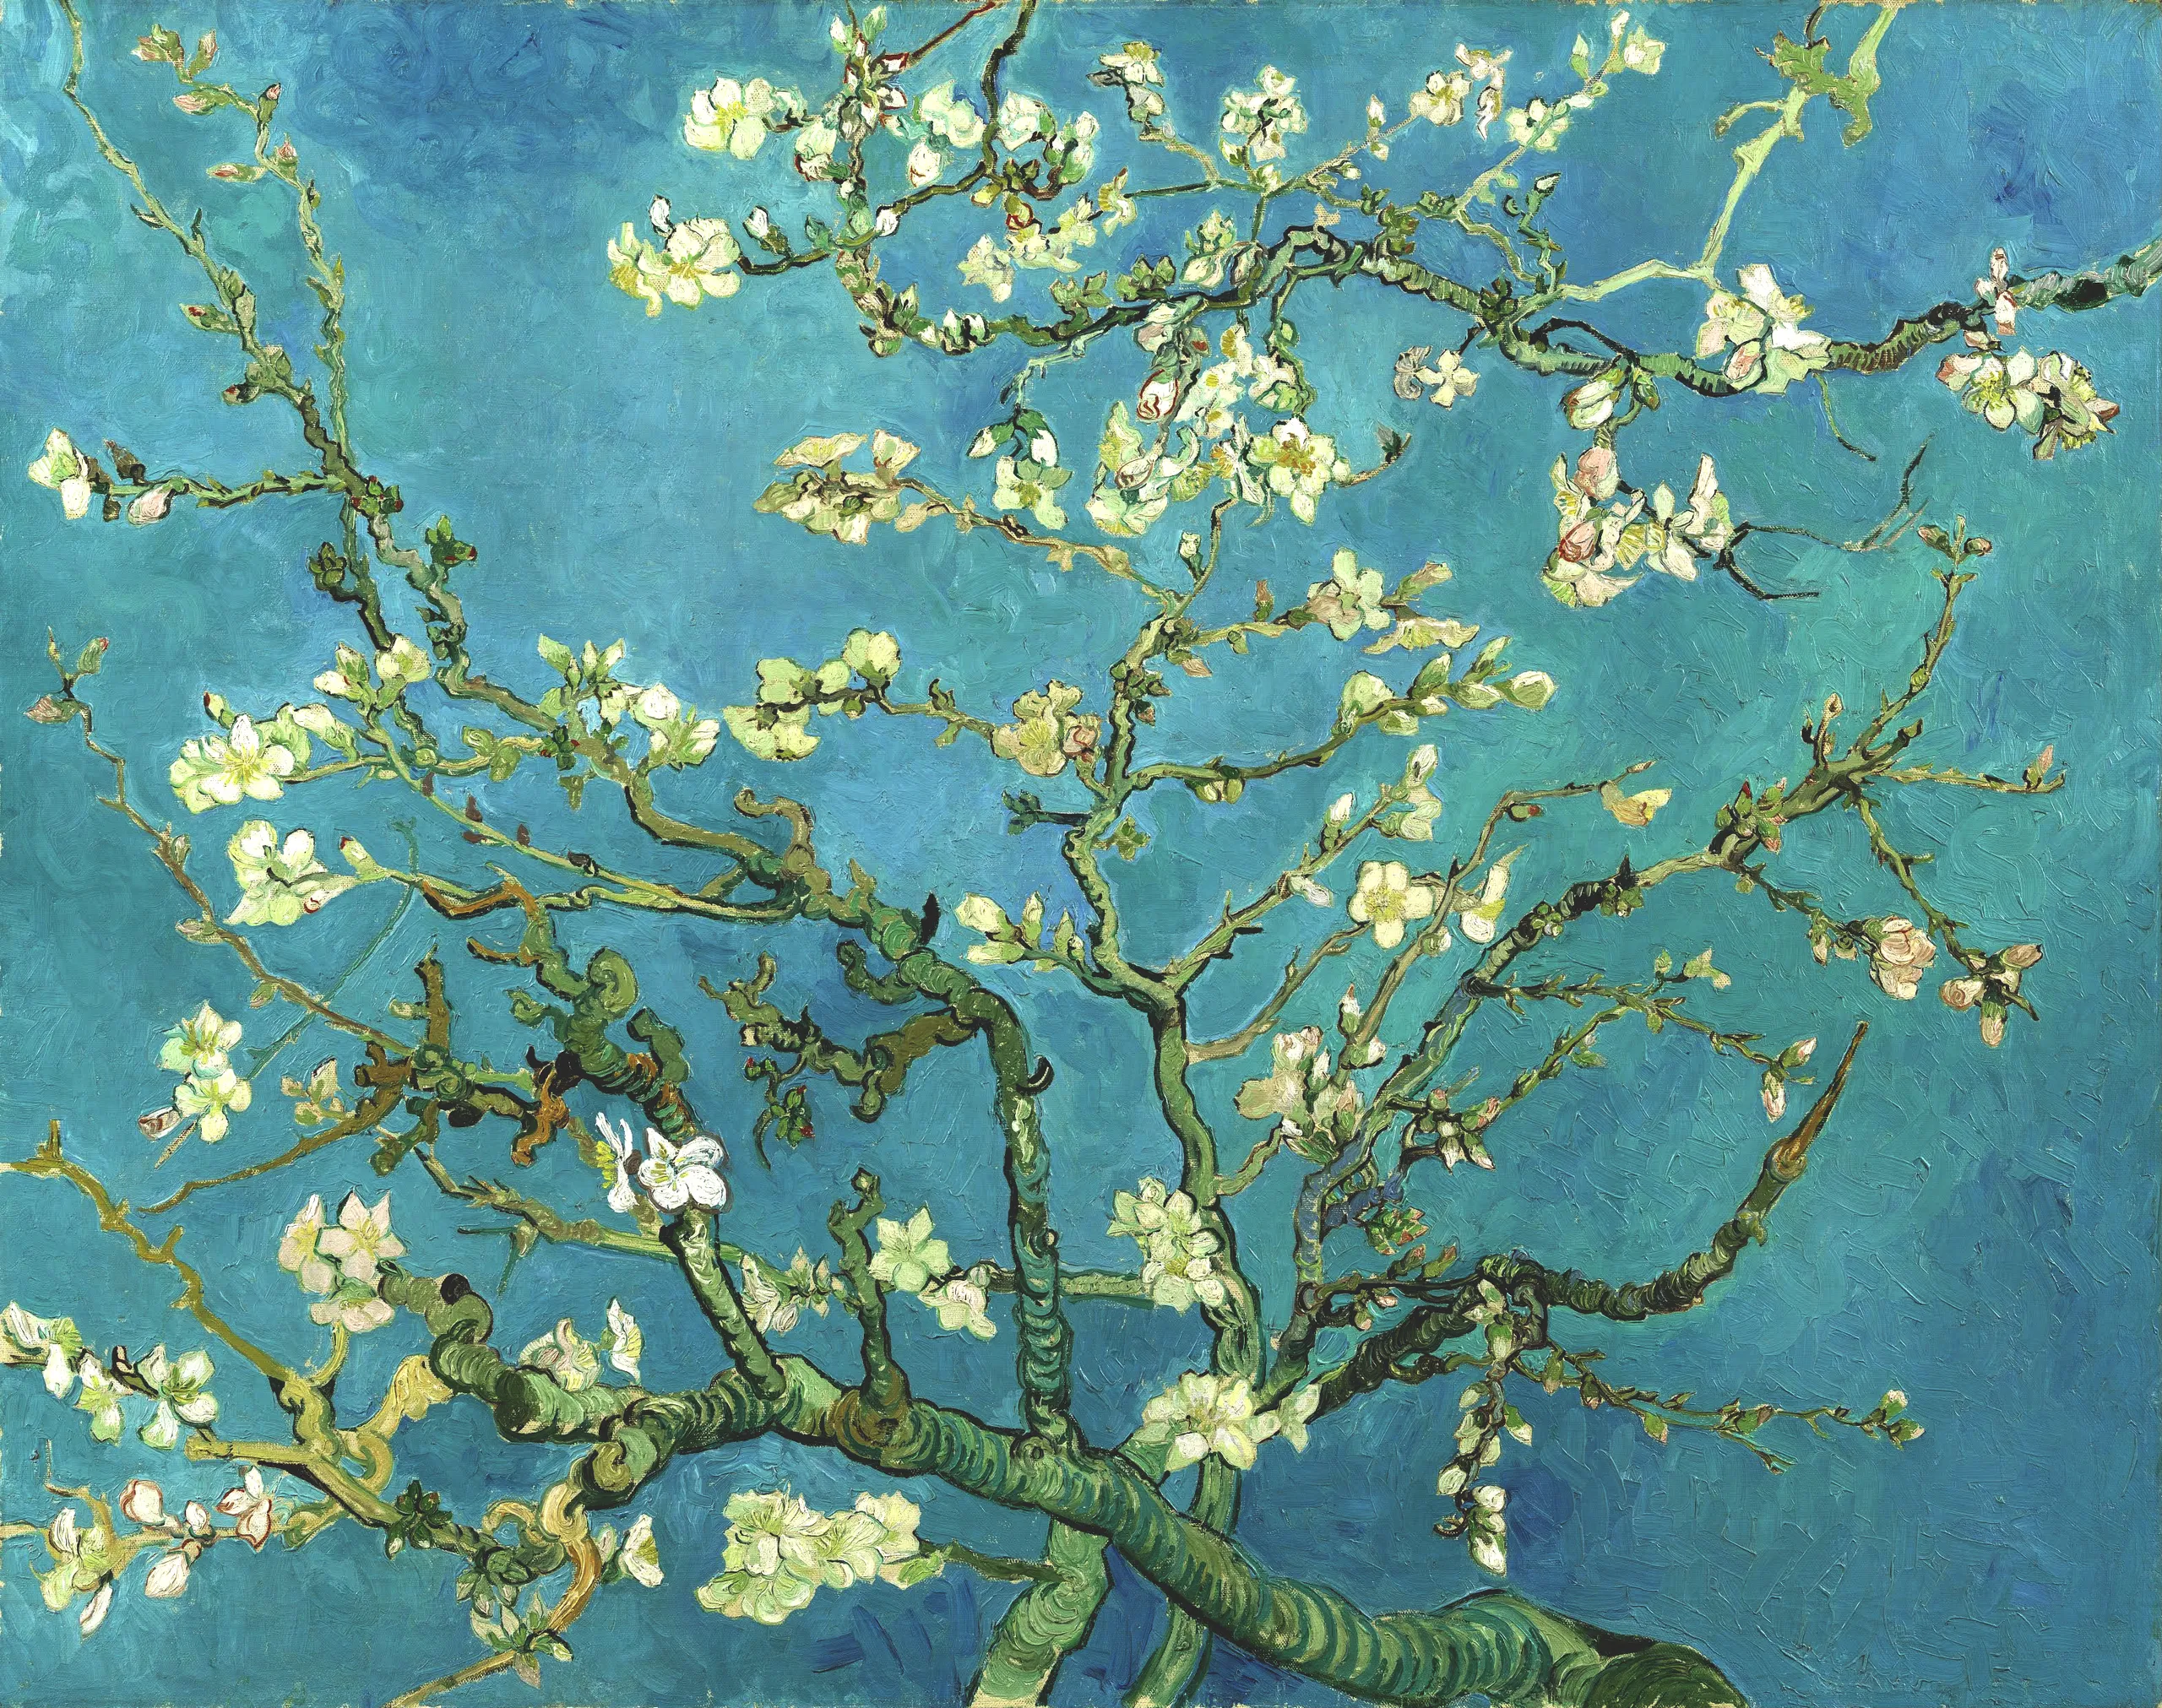 Vincent van Gogh, Almond Blossoms, 1890